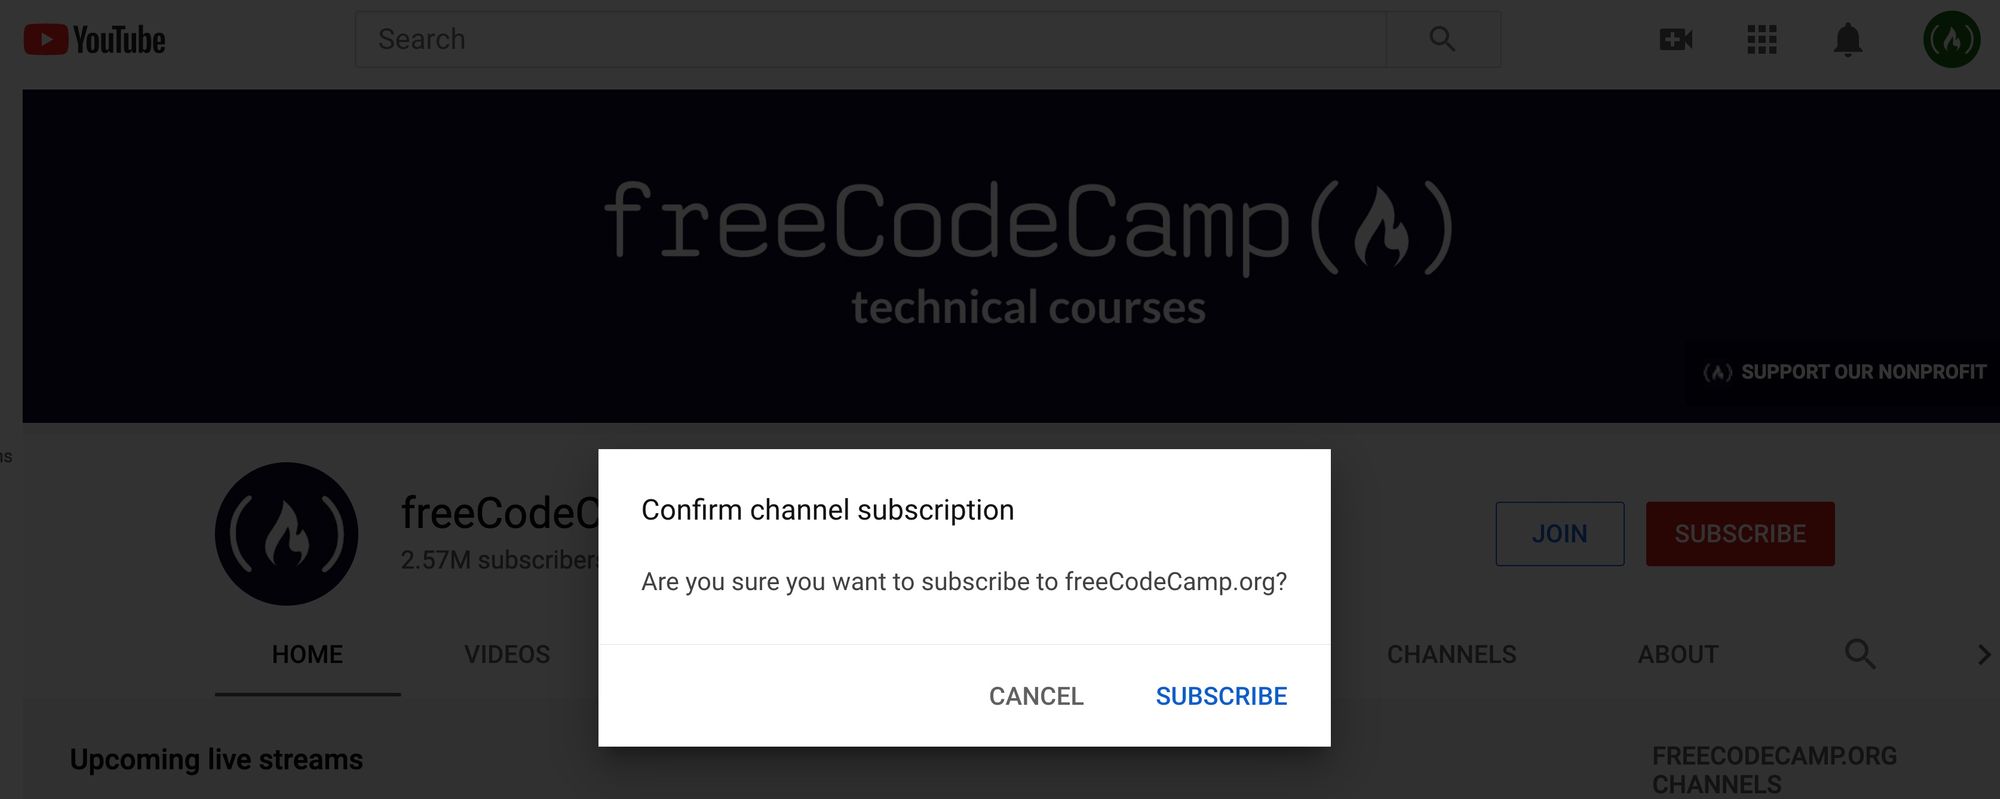 freeCodeCamp_org_-_YouTube